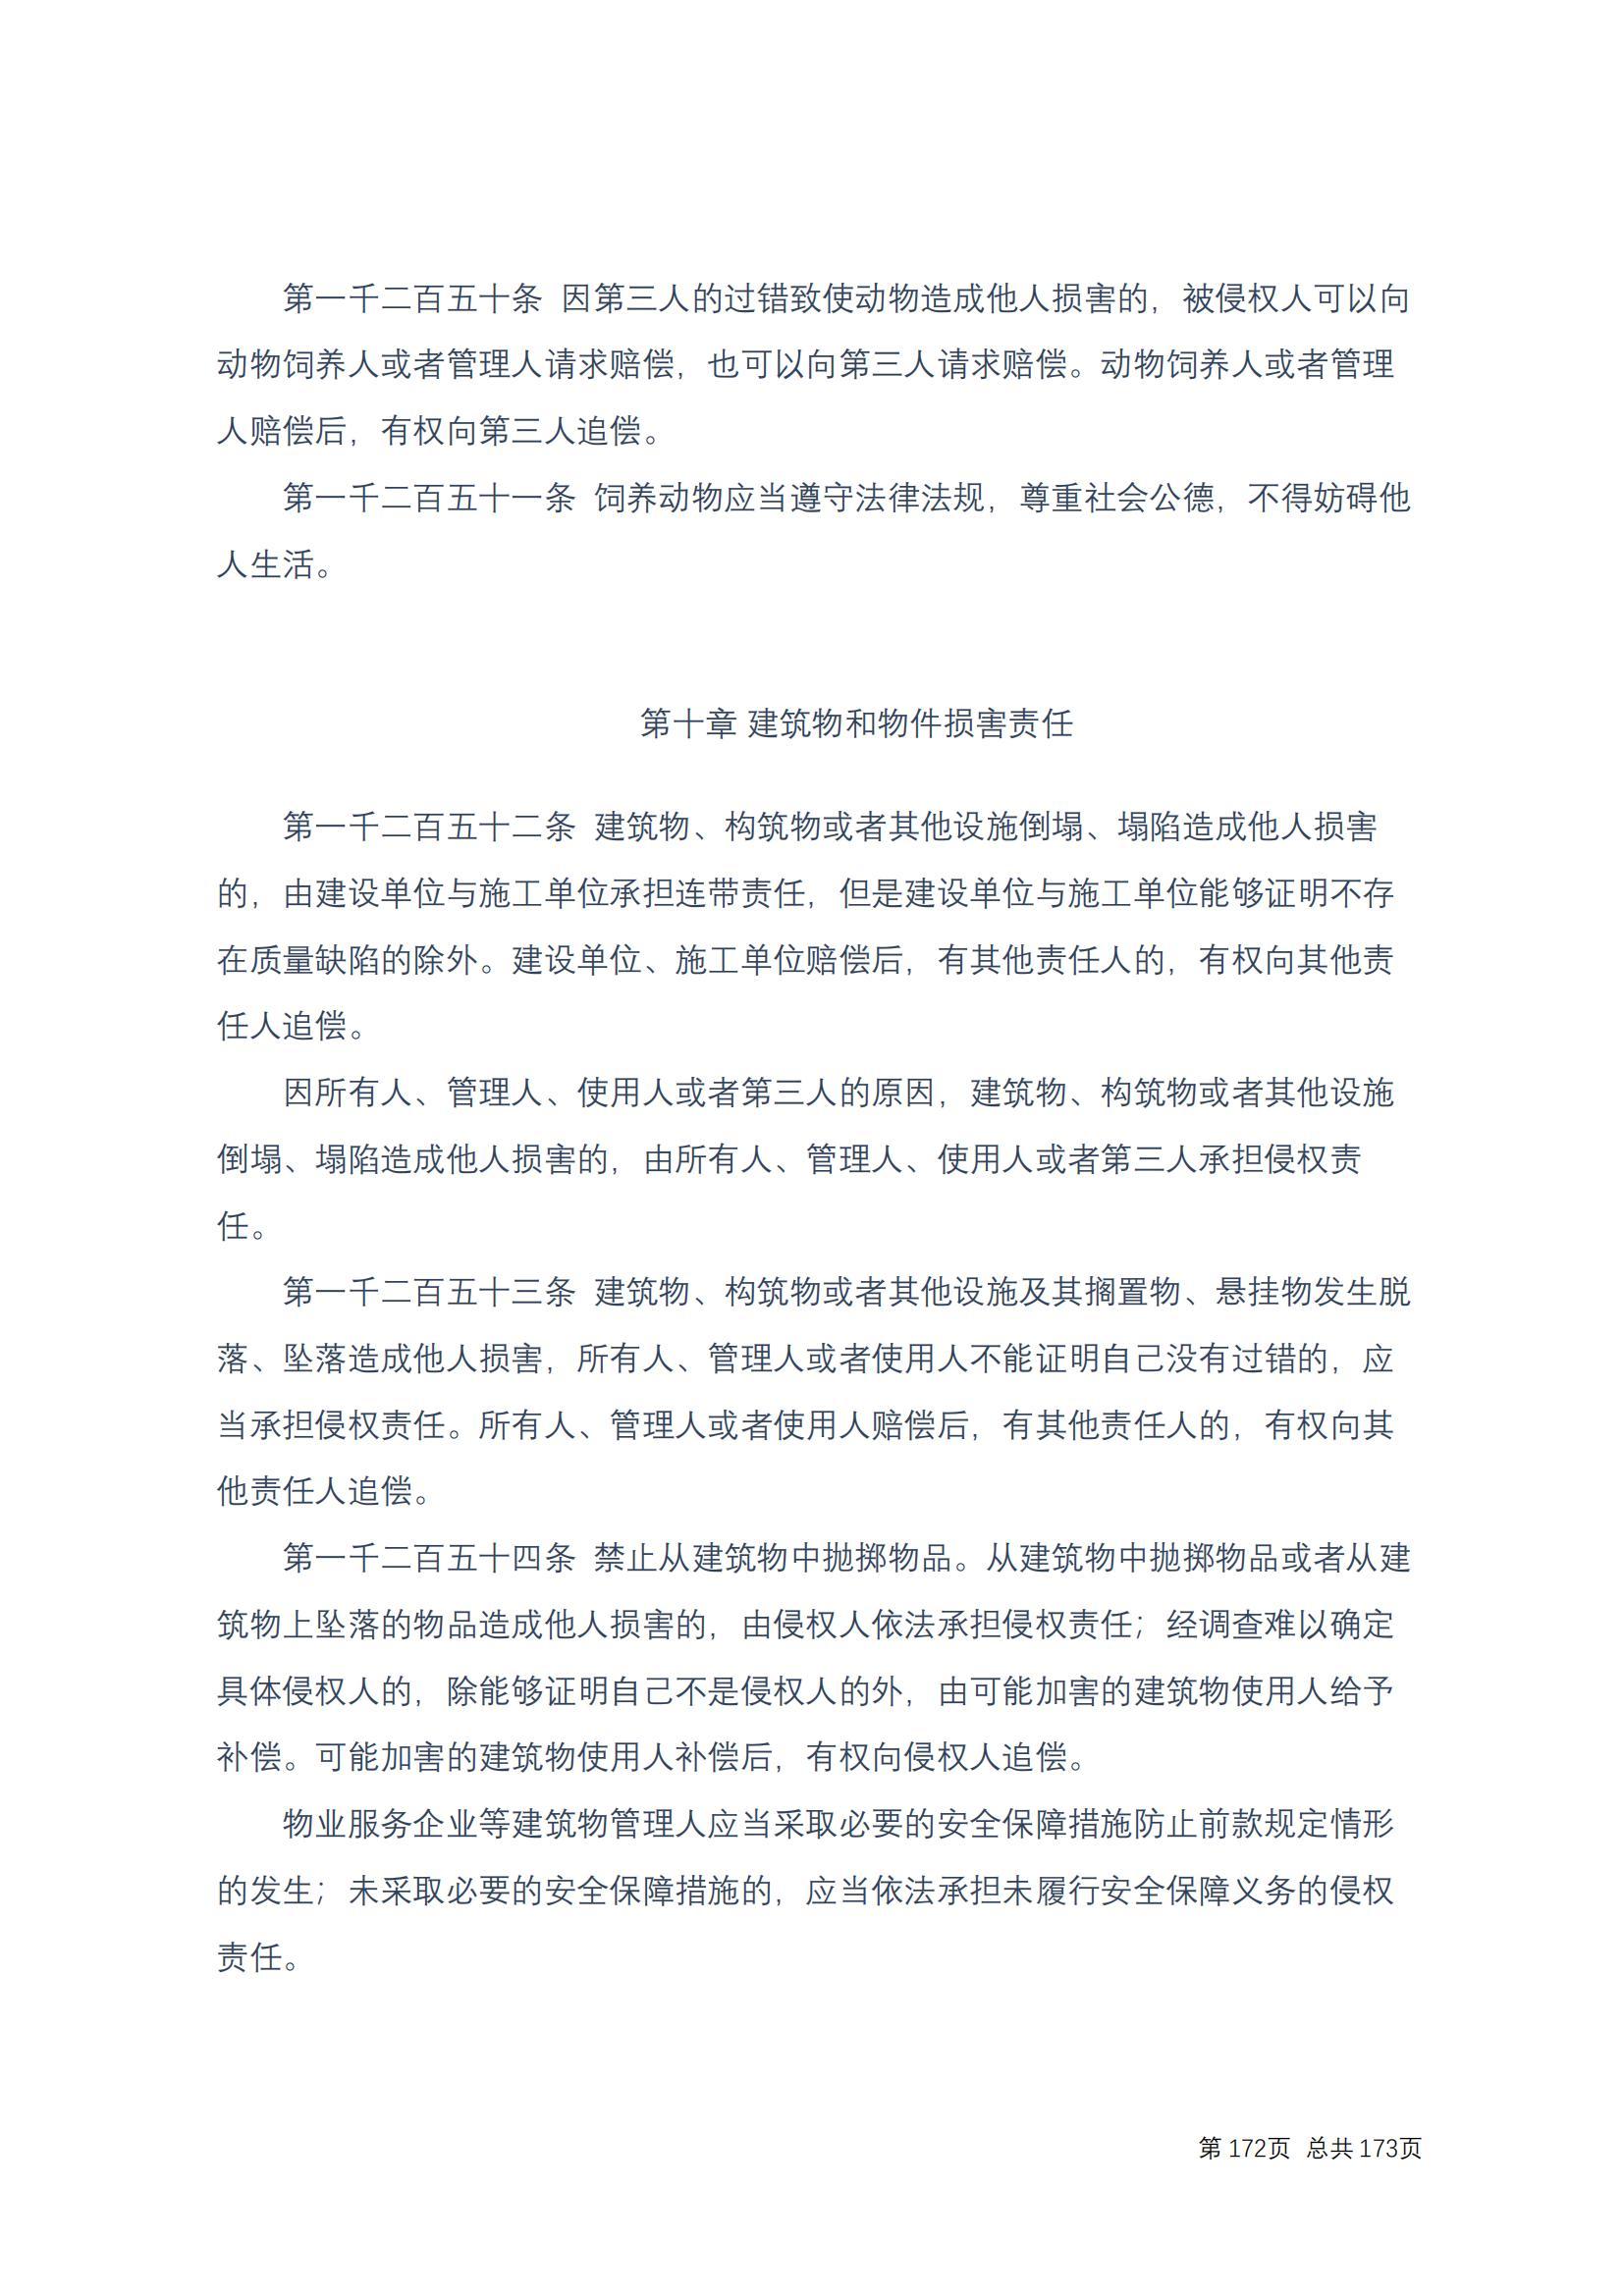 中华人民共和国民法典 修改过_171